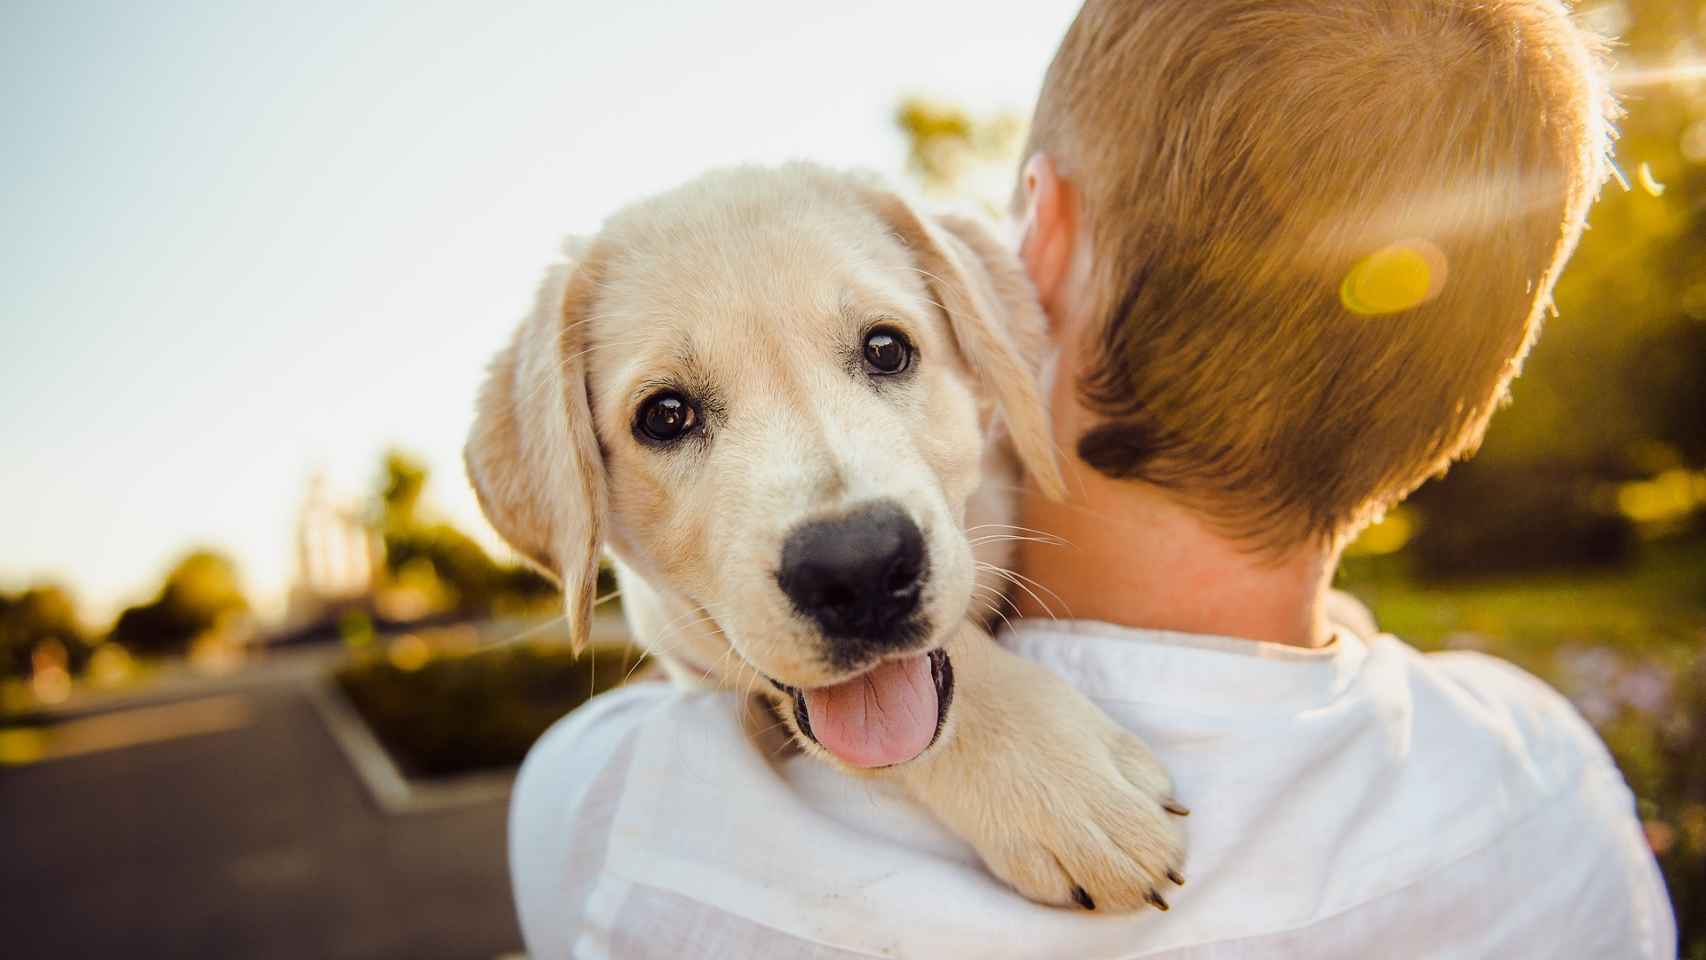 Lo que tienes que saber si tienes un perro con la nueva ley del Bienestar Animal